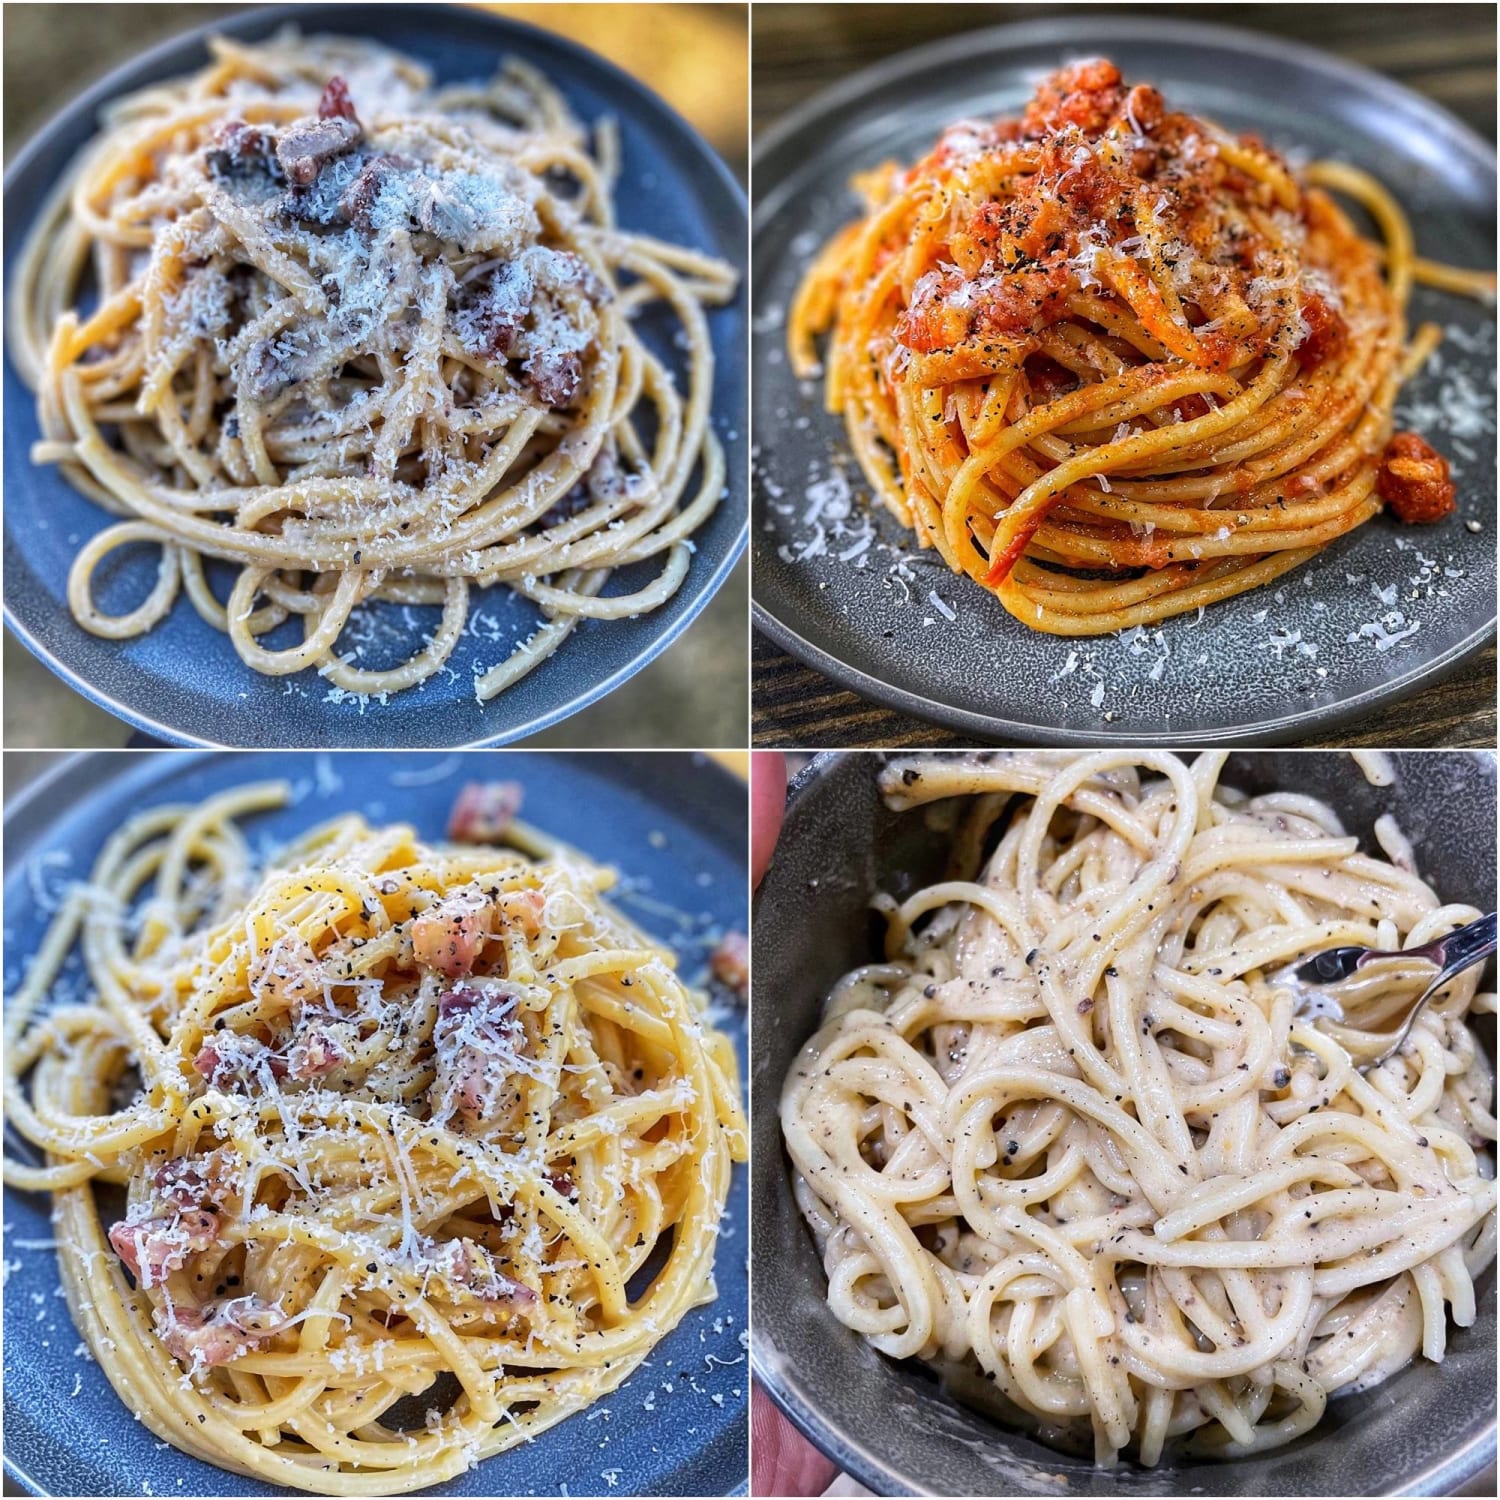 [Homemade] Four Roman Pastas